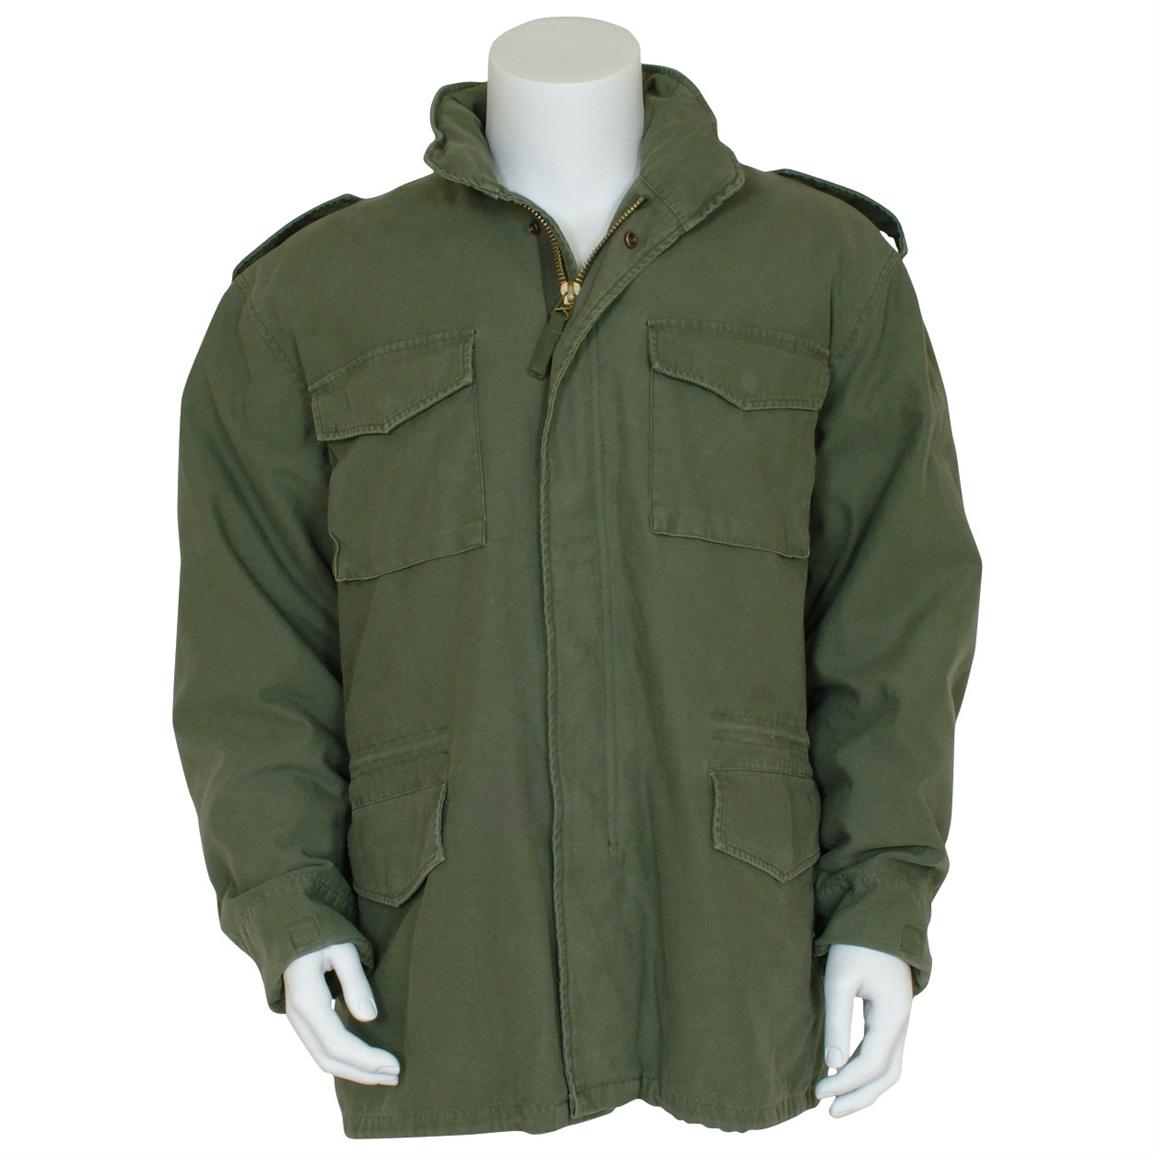 Fox Tactical Retro M65 Field Jacket with Liner, Olive Drab